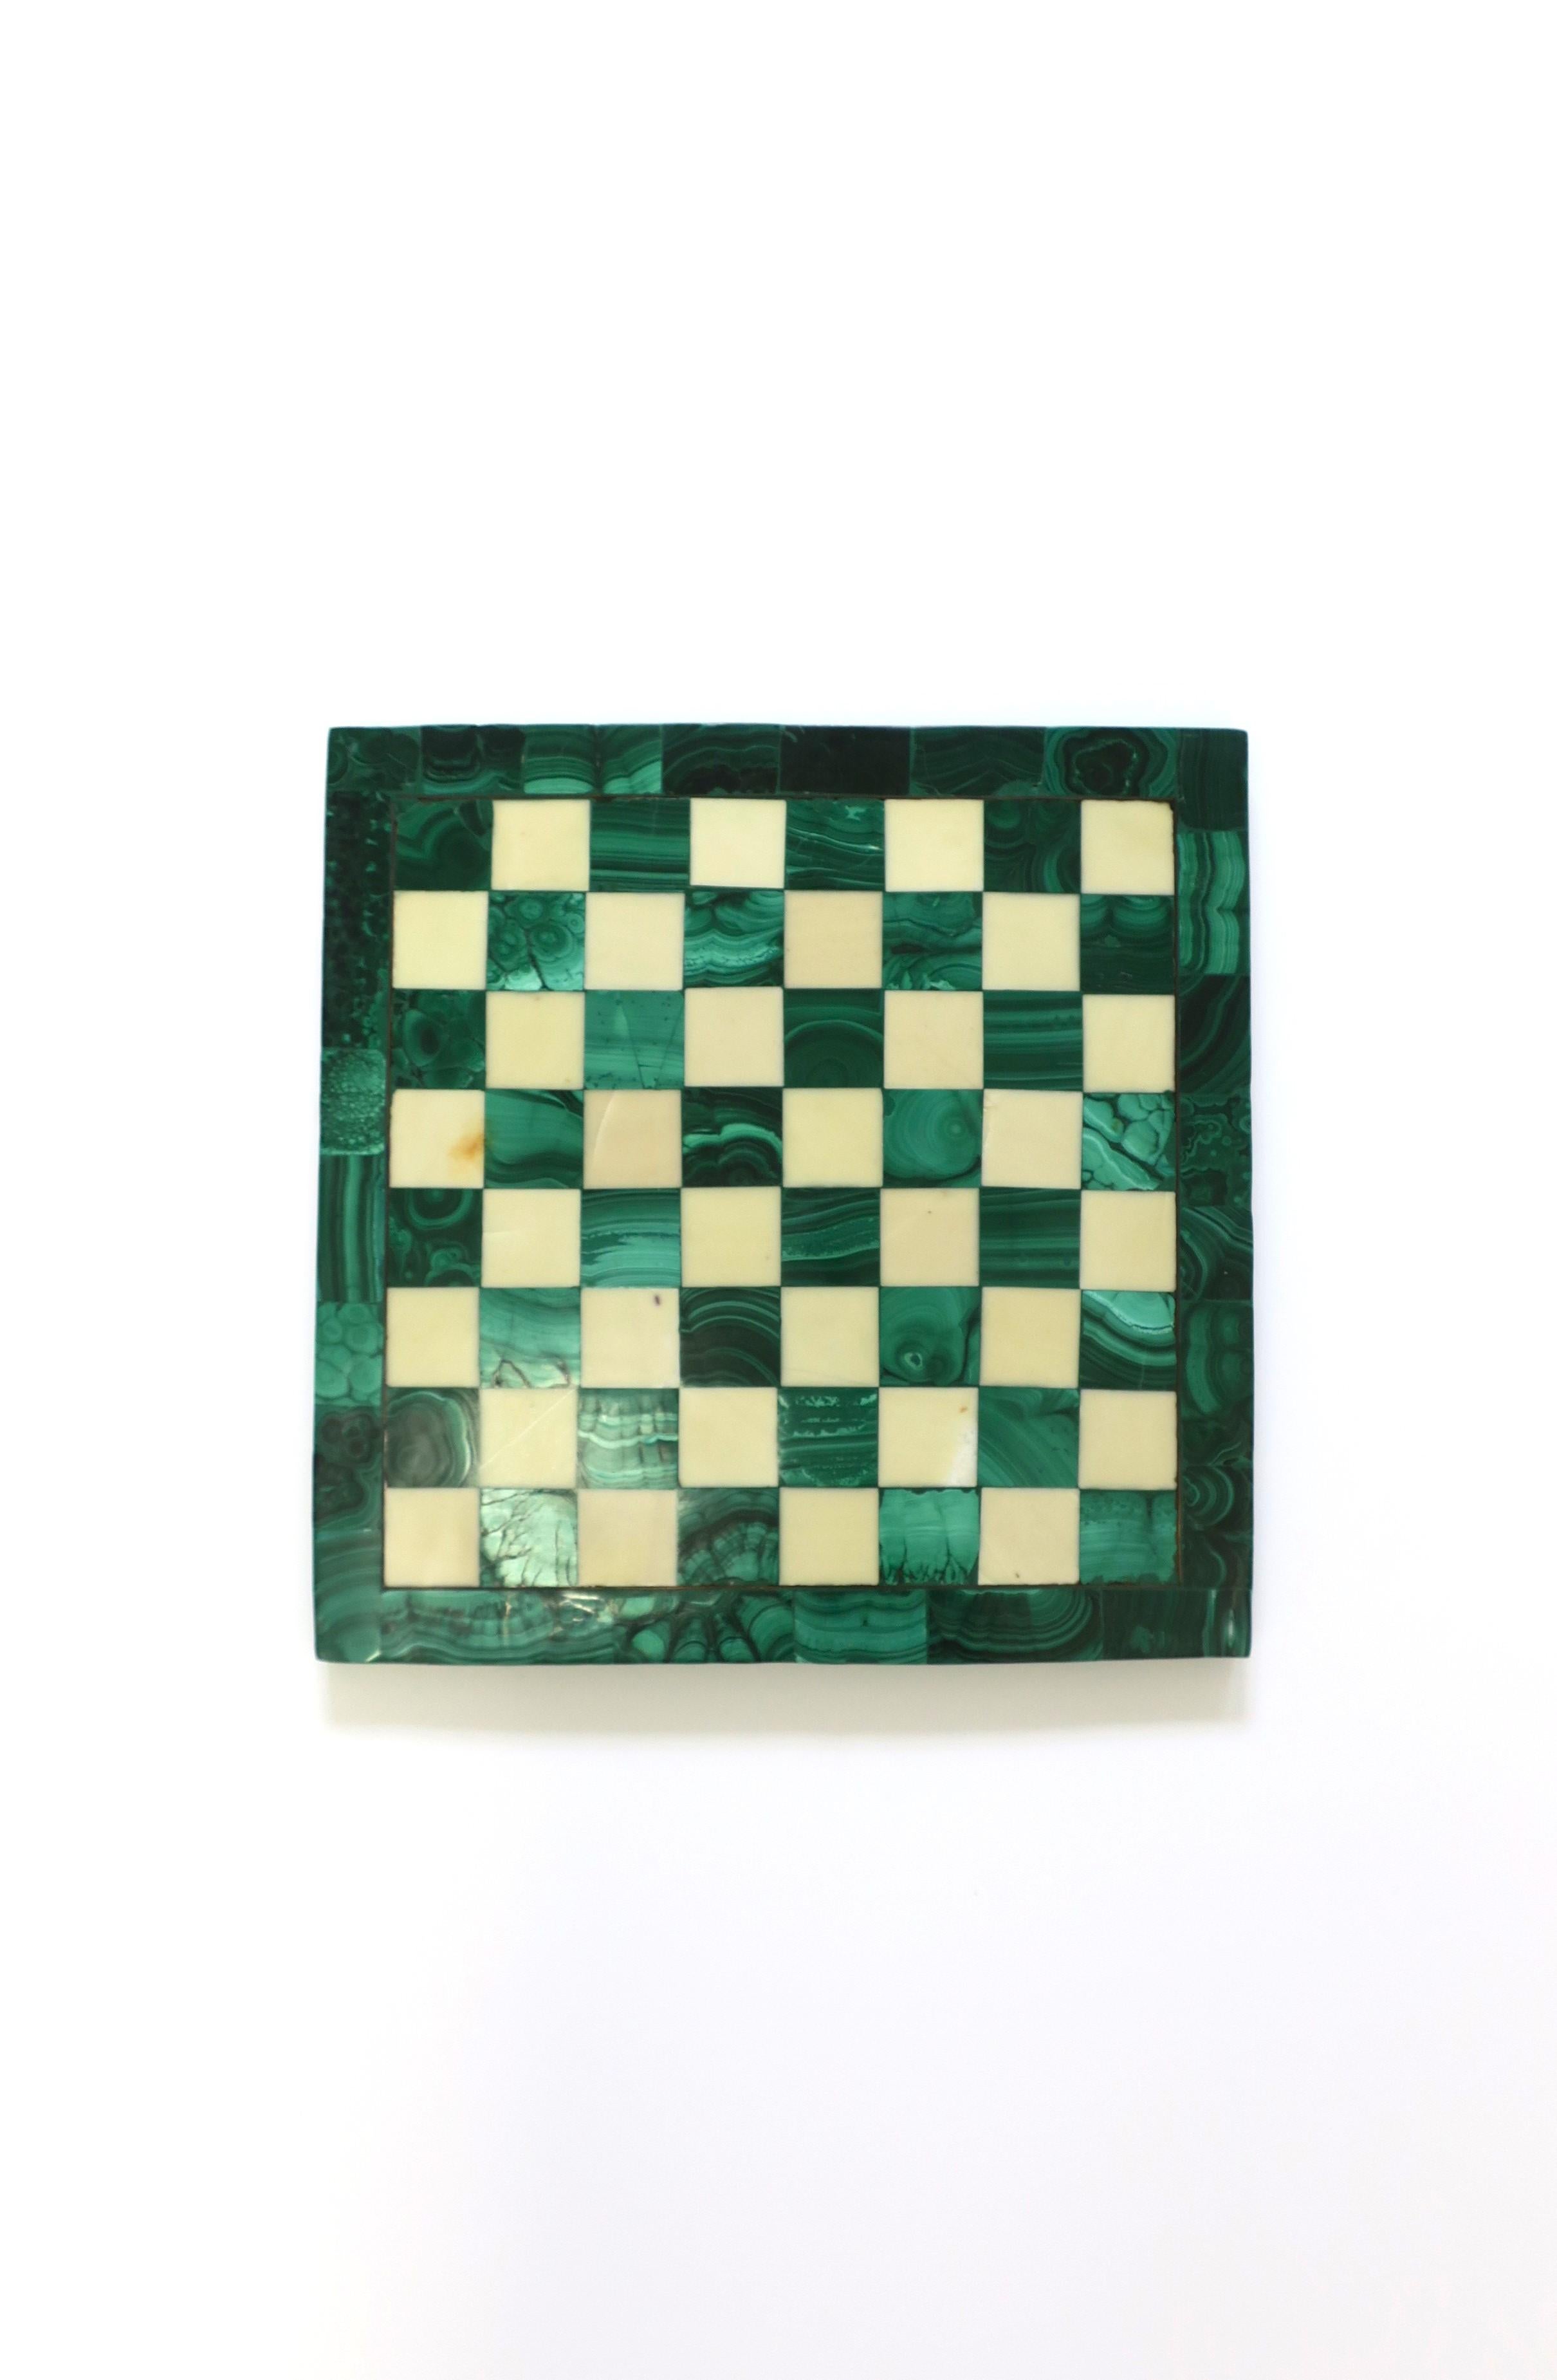 Échiquier en malachite verte et marbre, vers le milieu du XXe siècle. Le plateau de jeu est composé de malachite verte et de marbre blanc cassé. Dimensions : 9